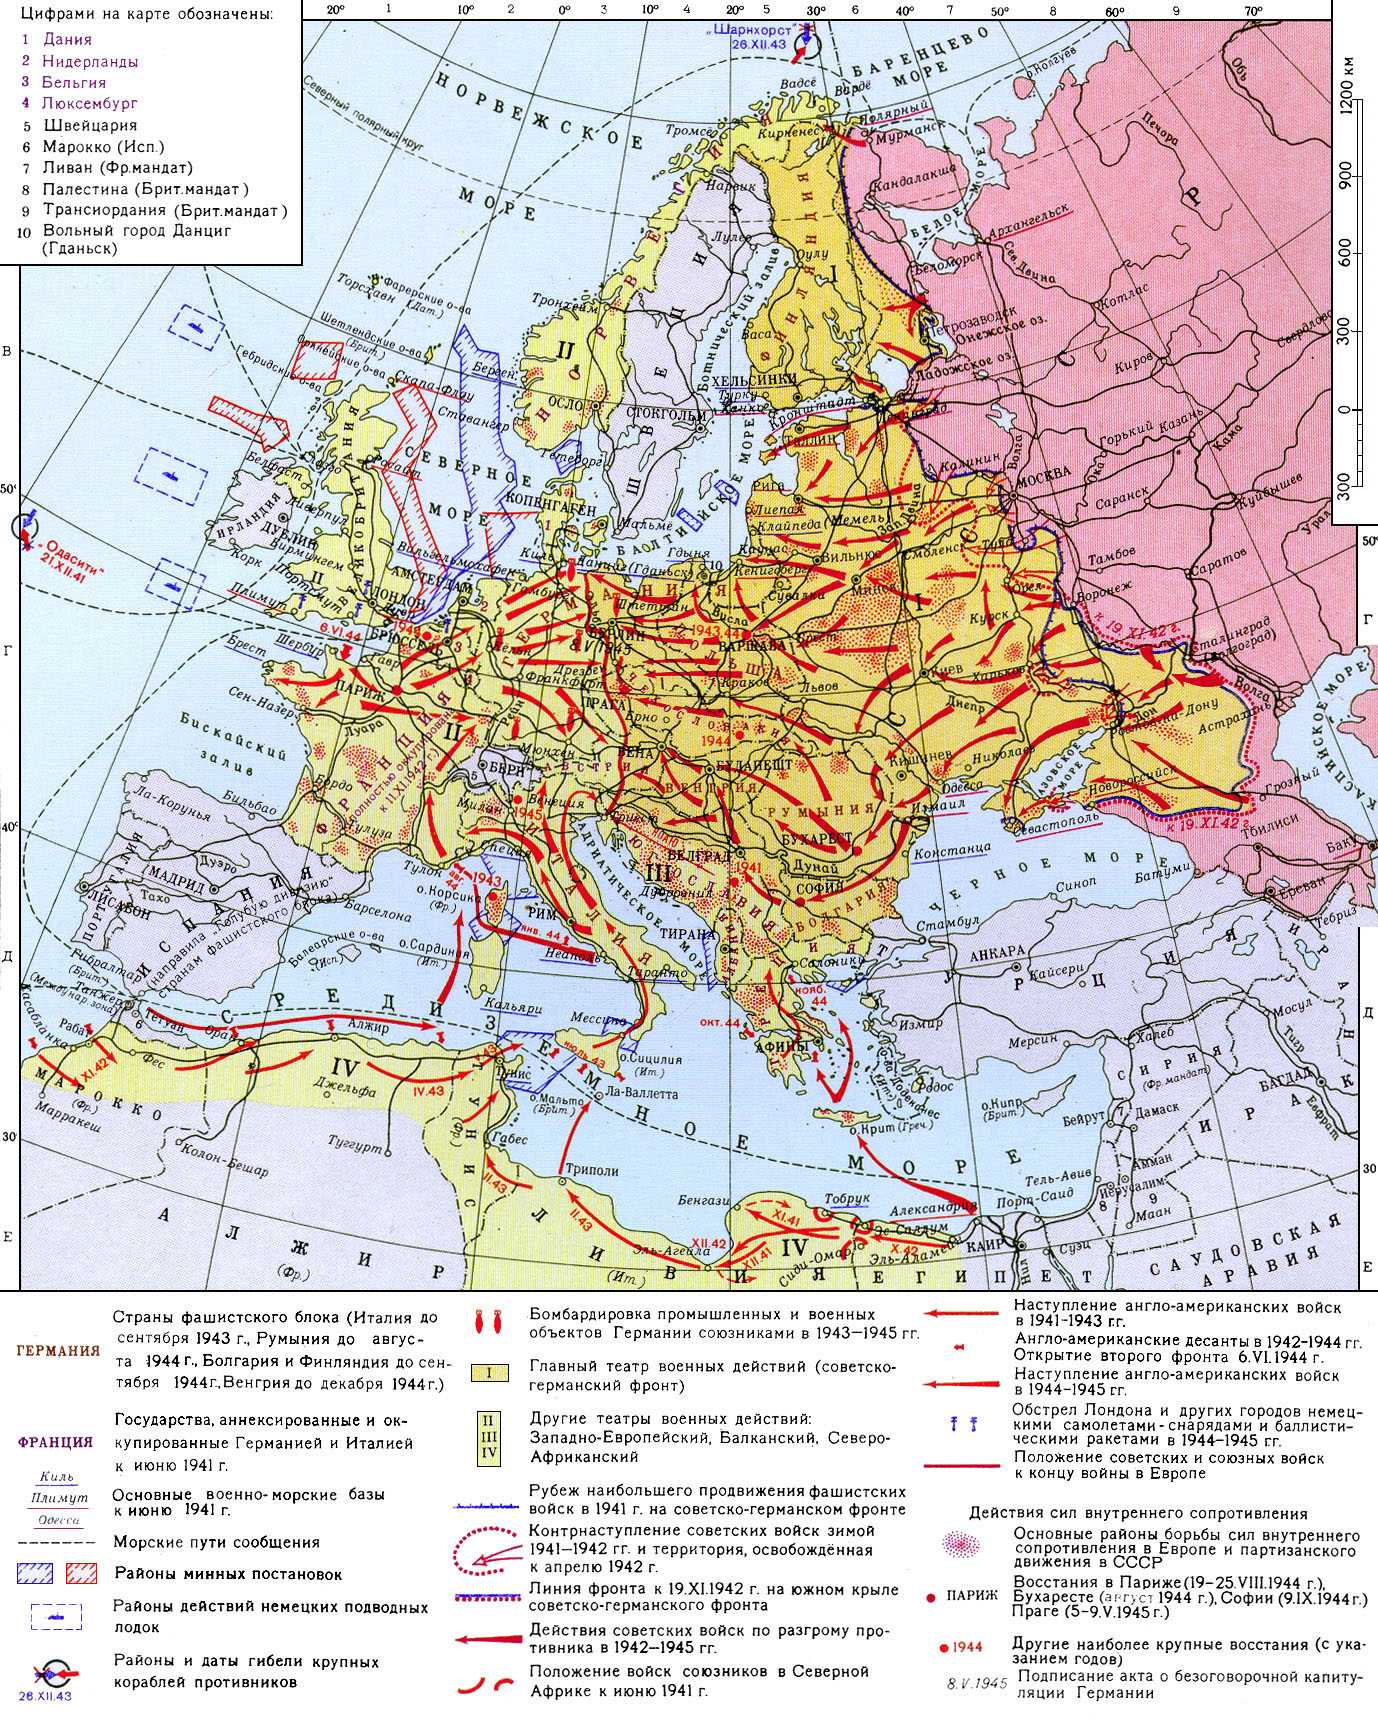 Вторая мировая война 1939-1945. Рис. 44